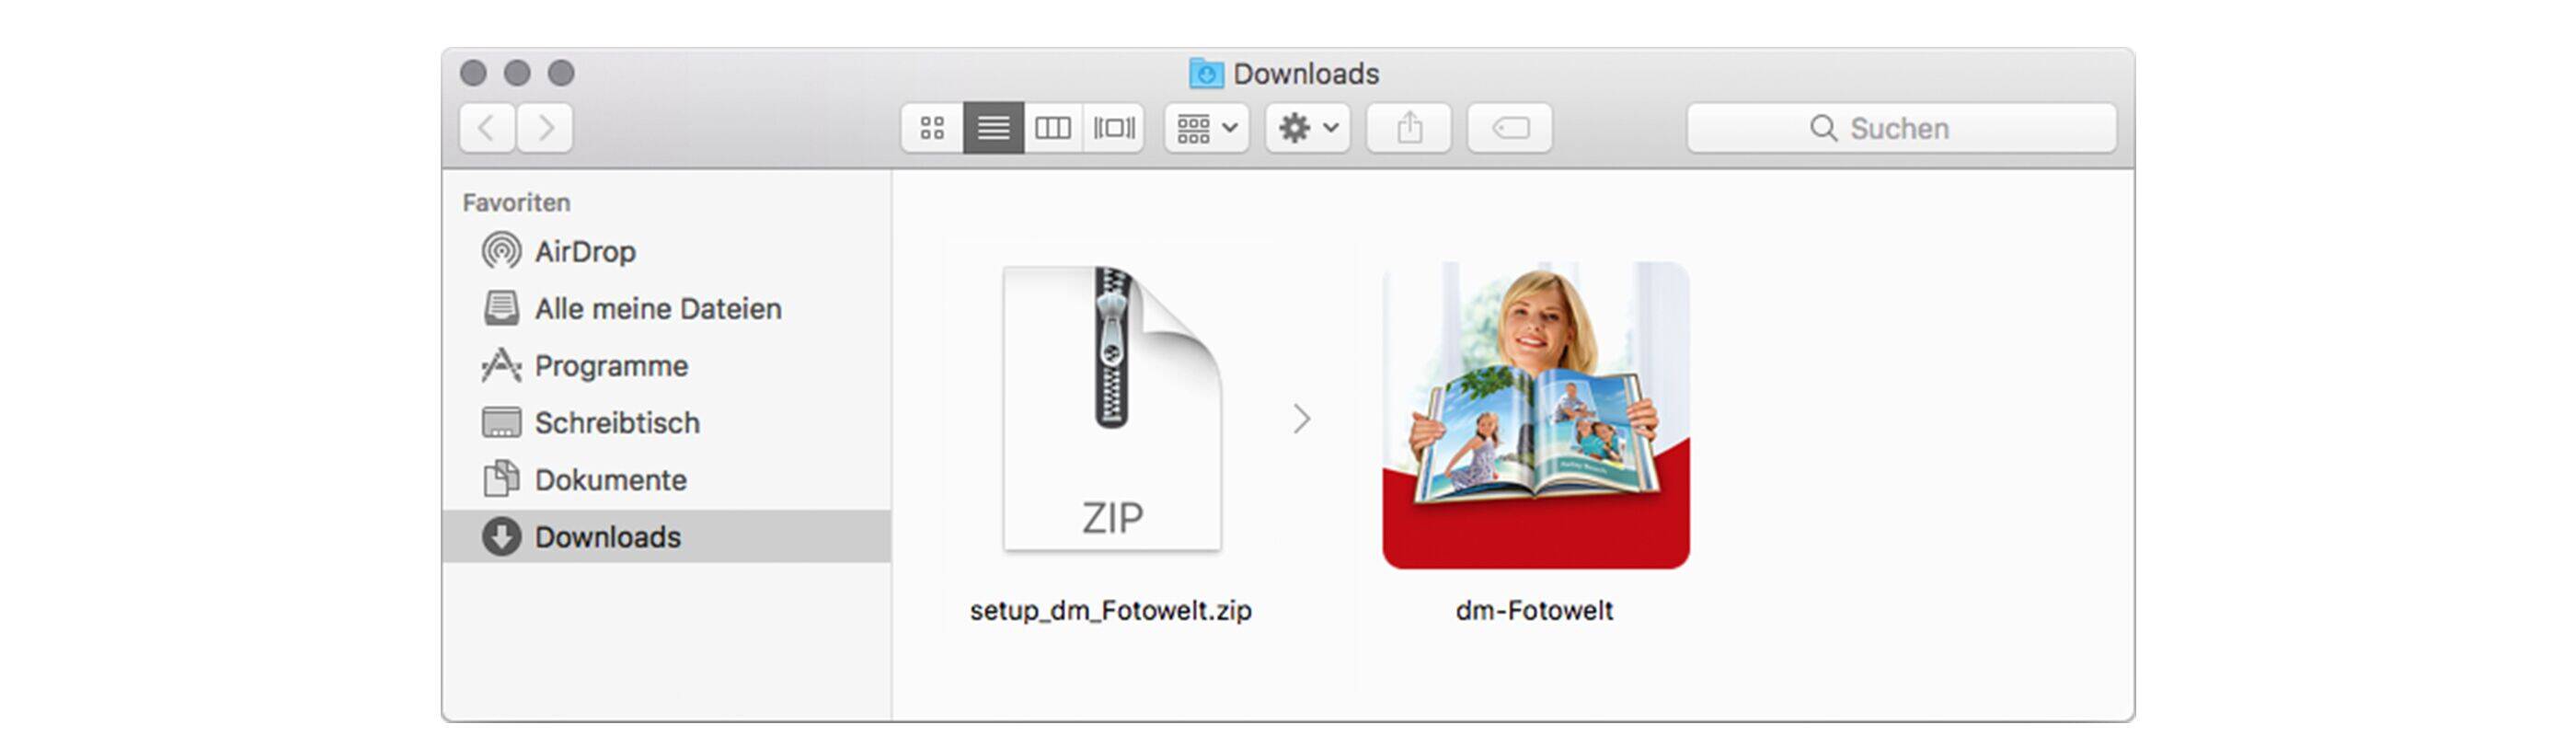 Download Finden Mac